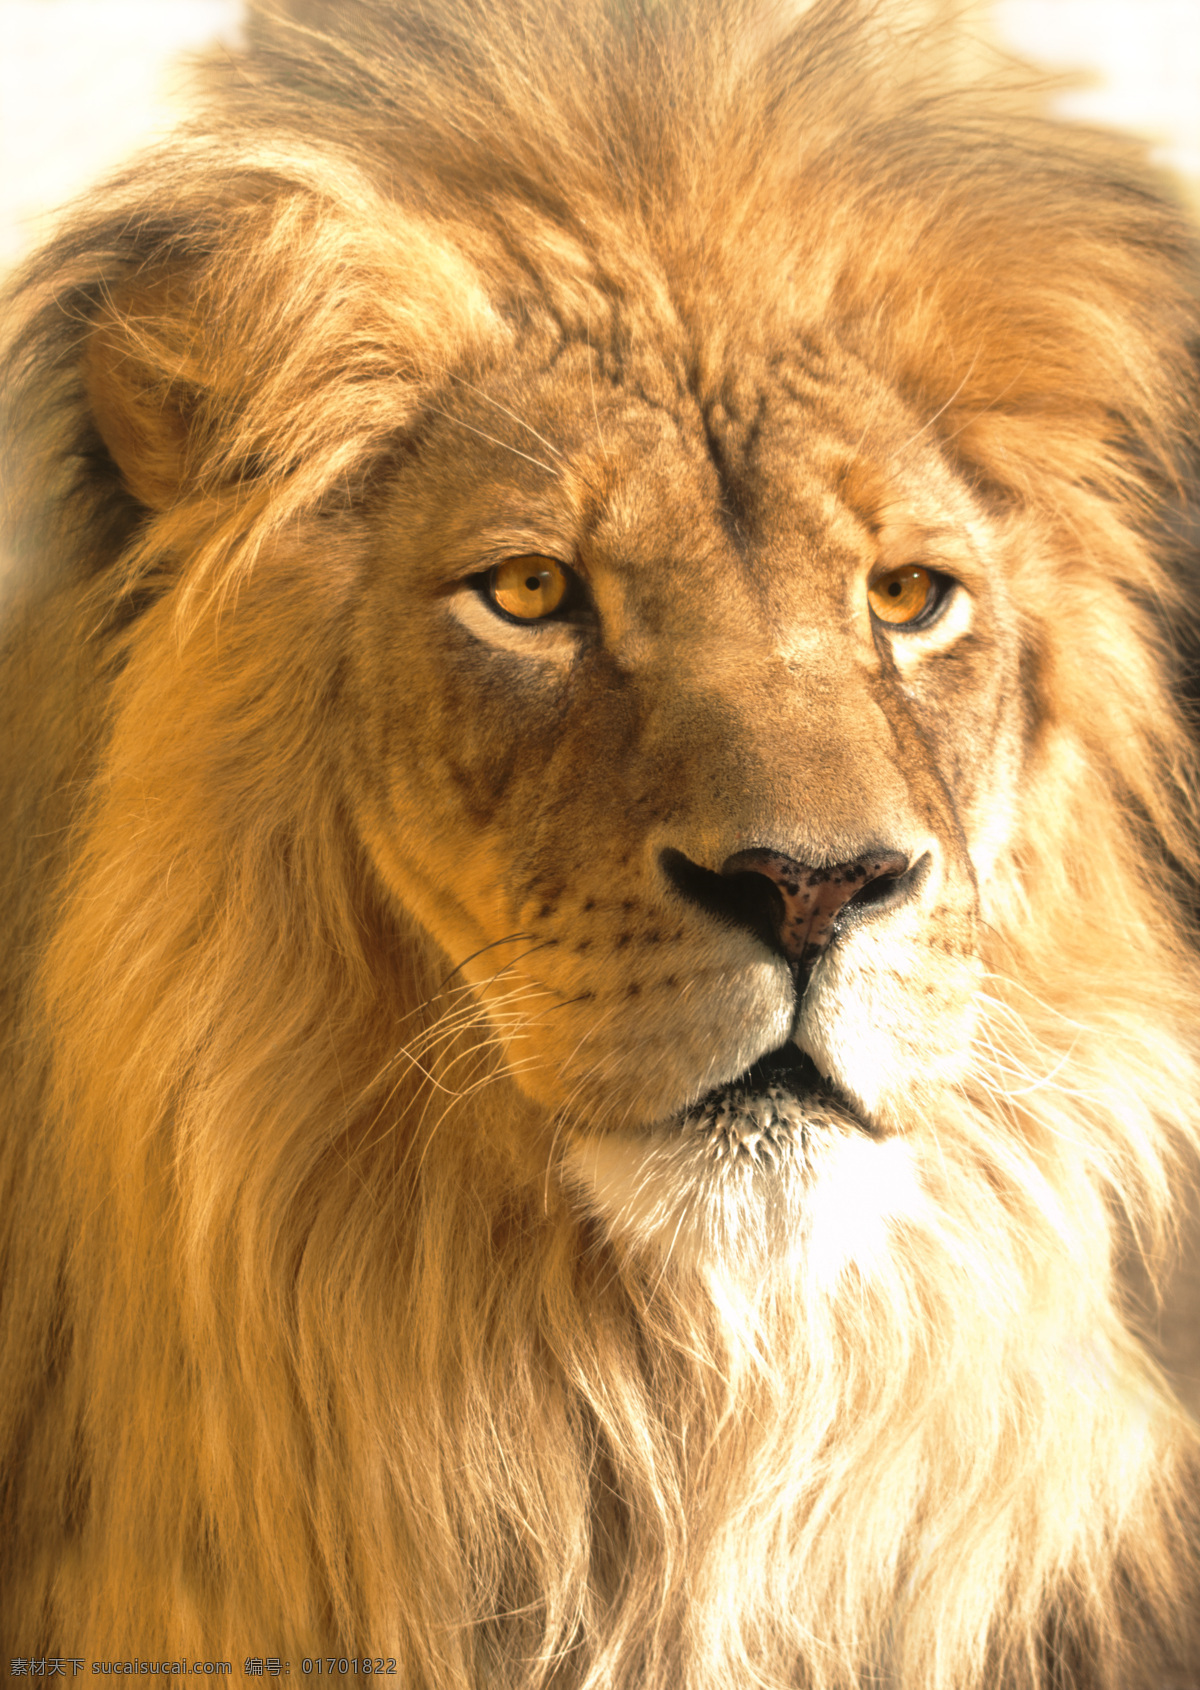 凶猛 野兽 狮子 山林 之王 狮子图片 生物世界 野生动物